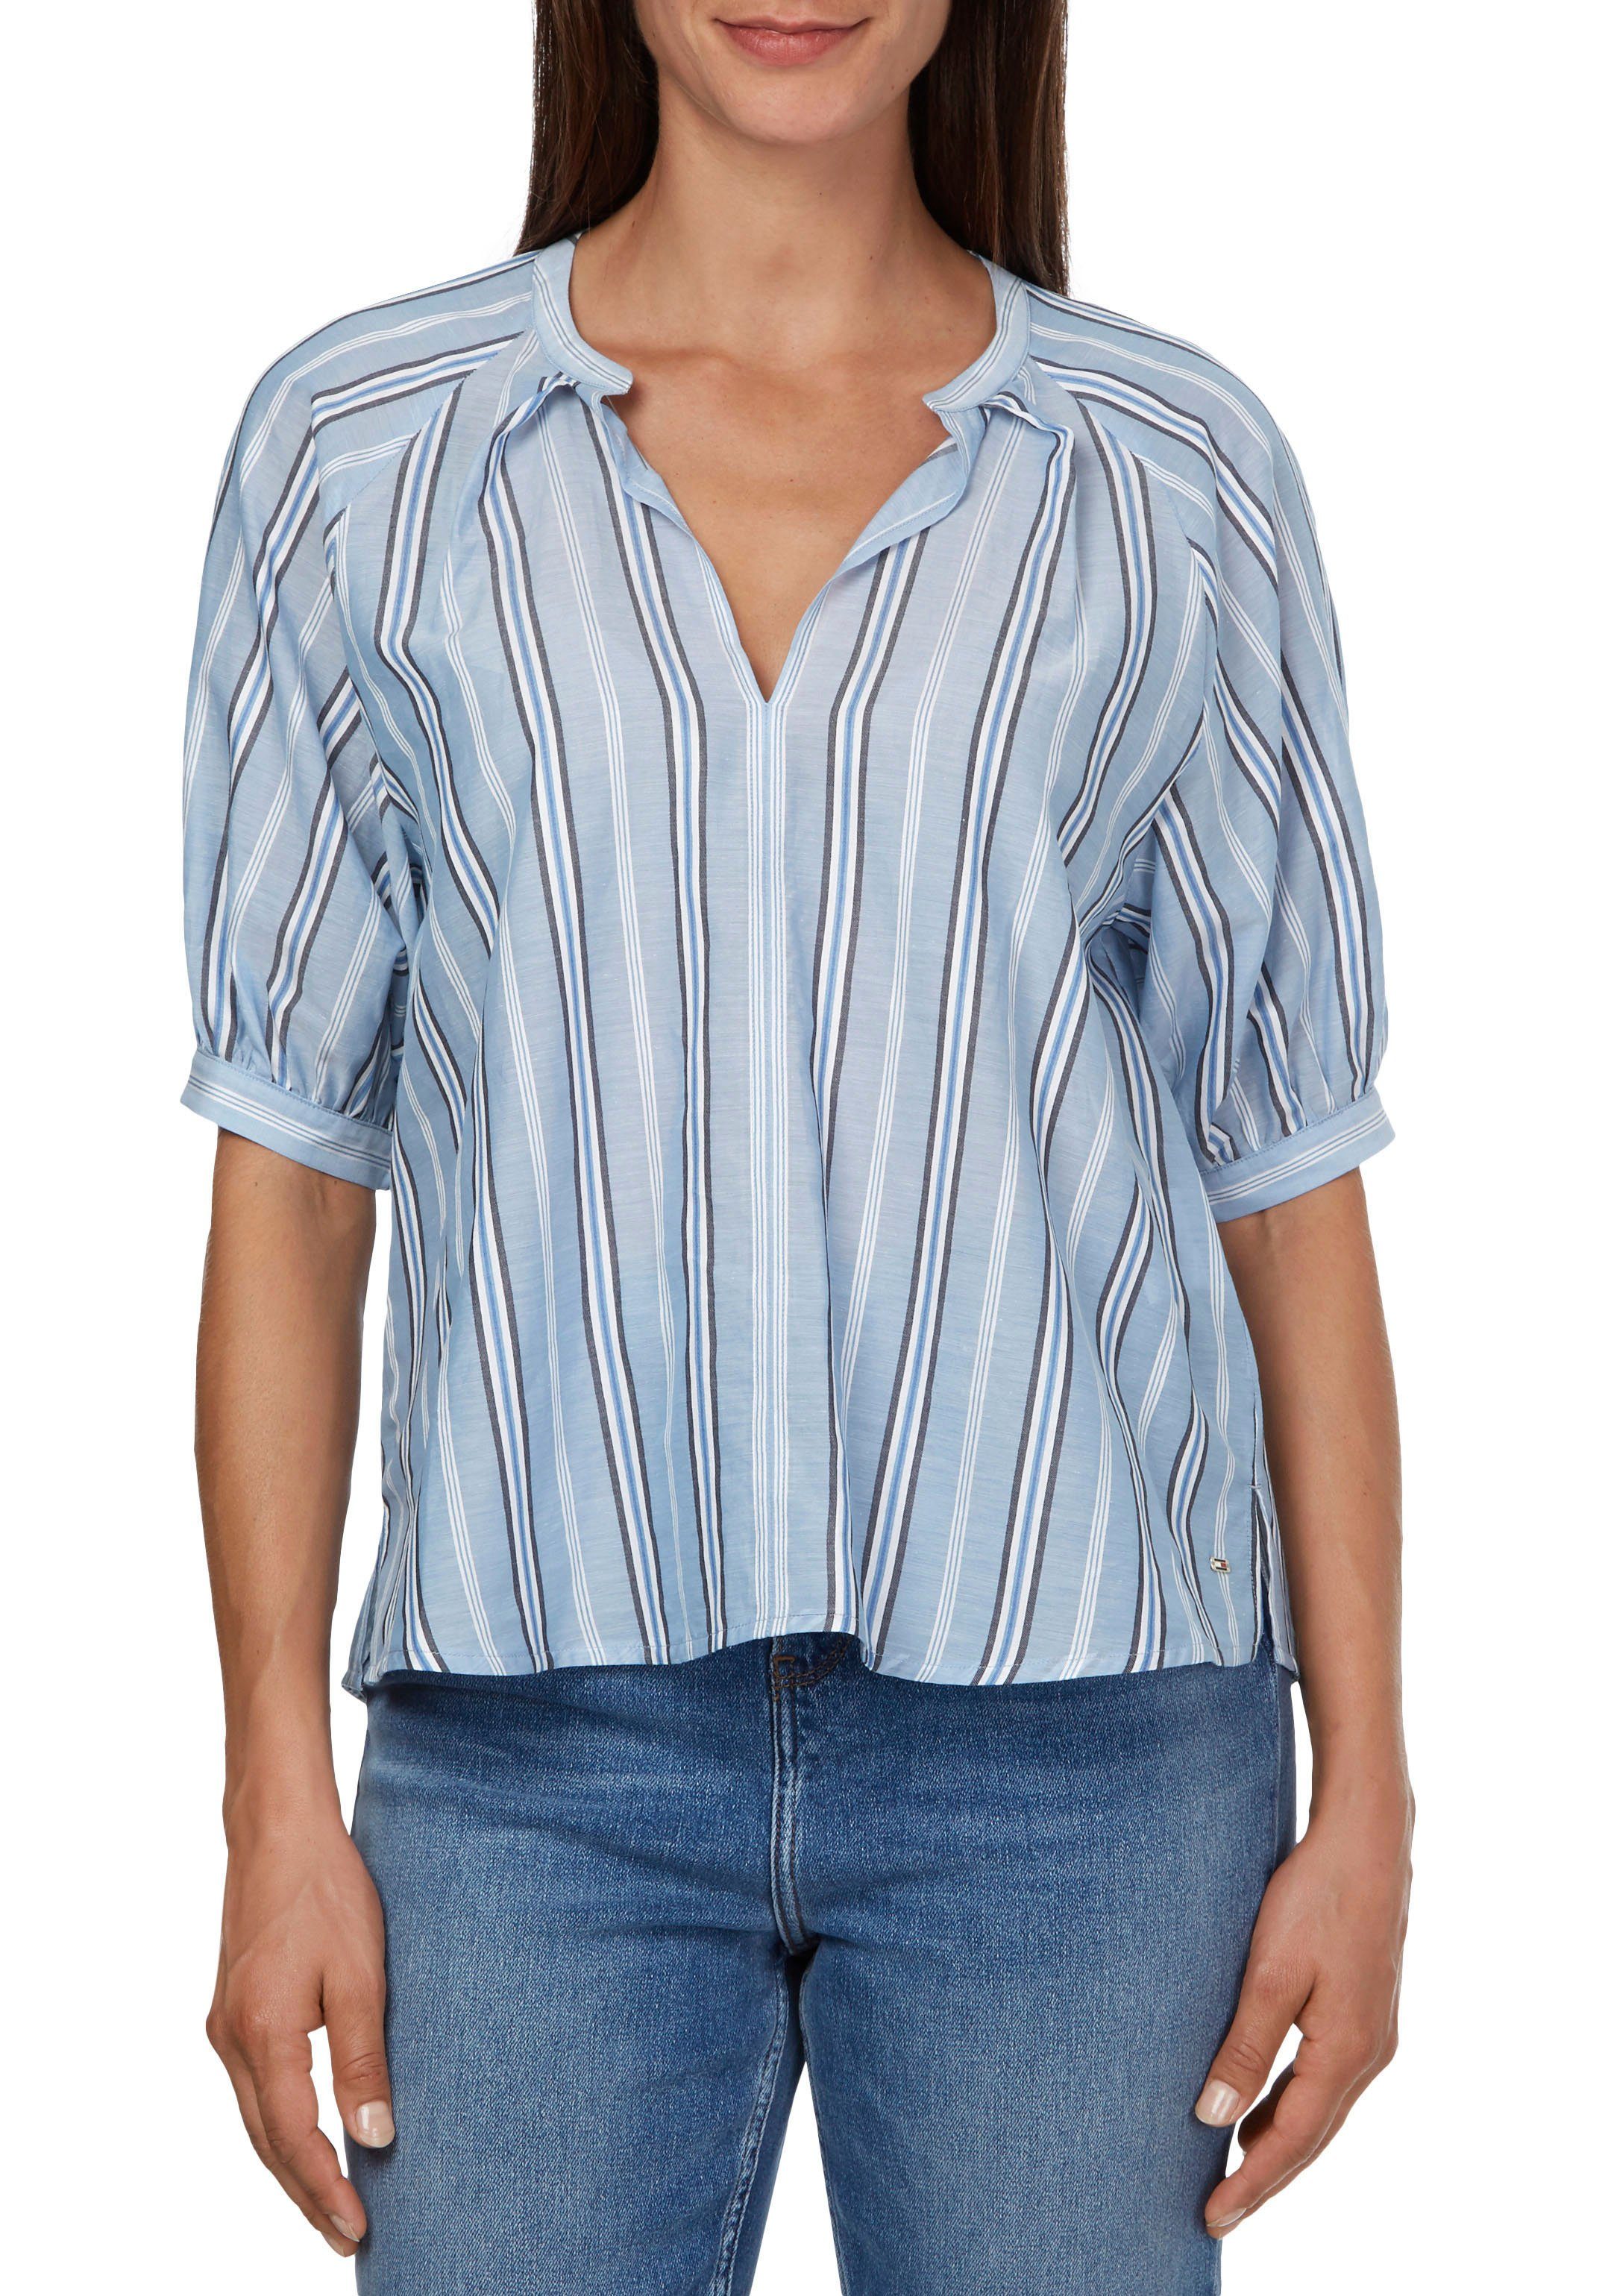 Tommy Hilfiger Blusen für Damen online kaufen | OTTO